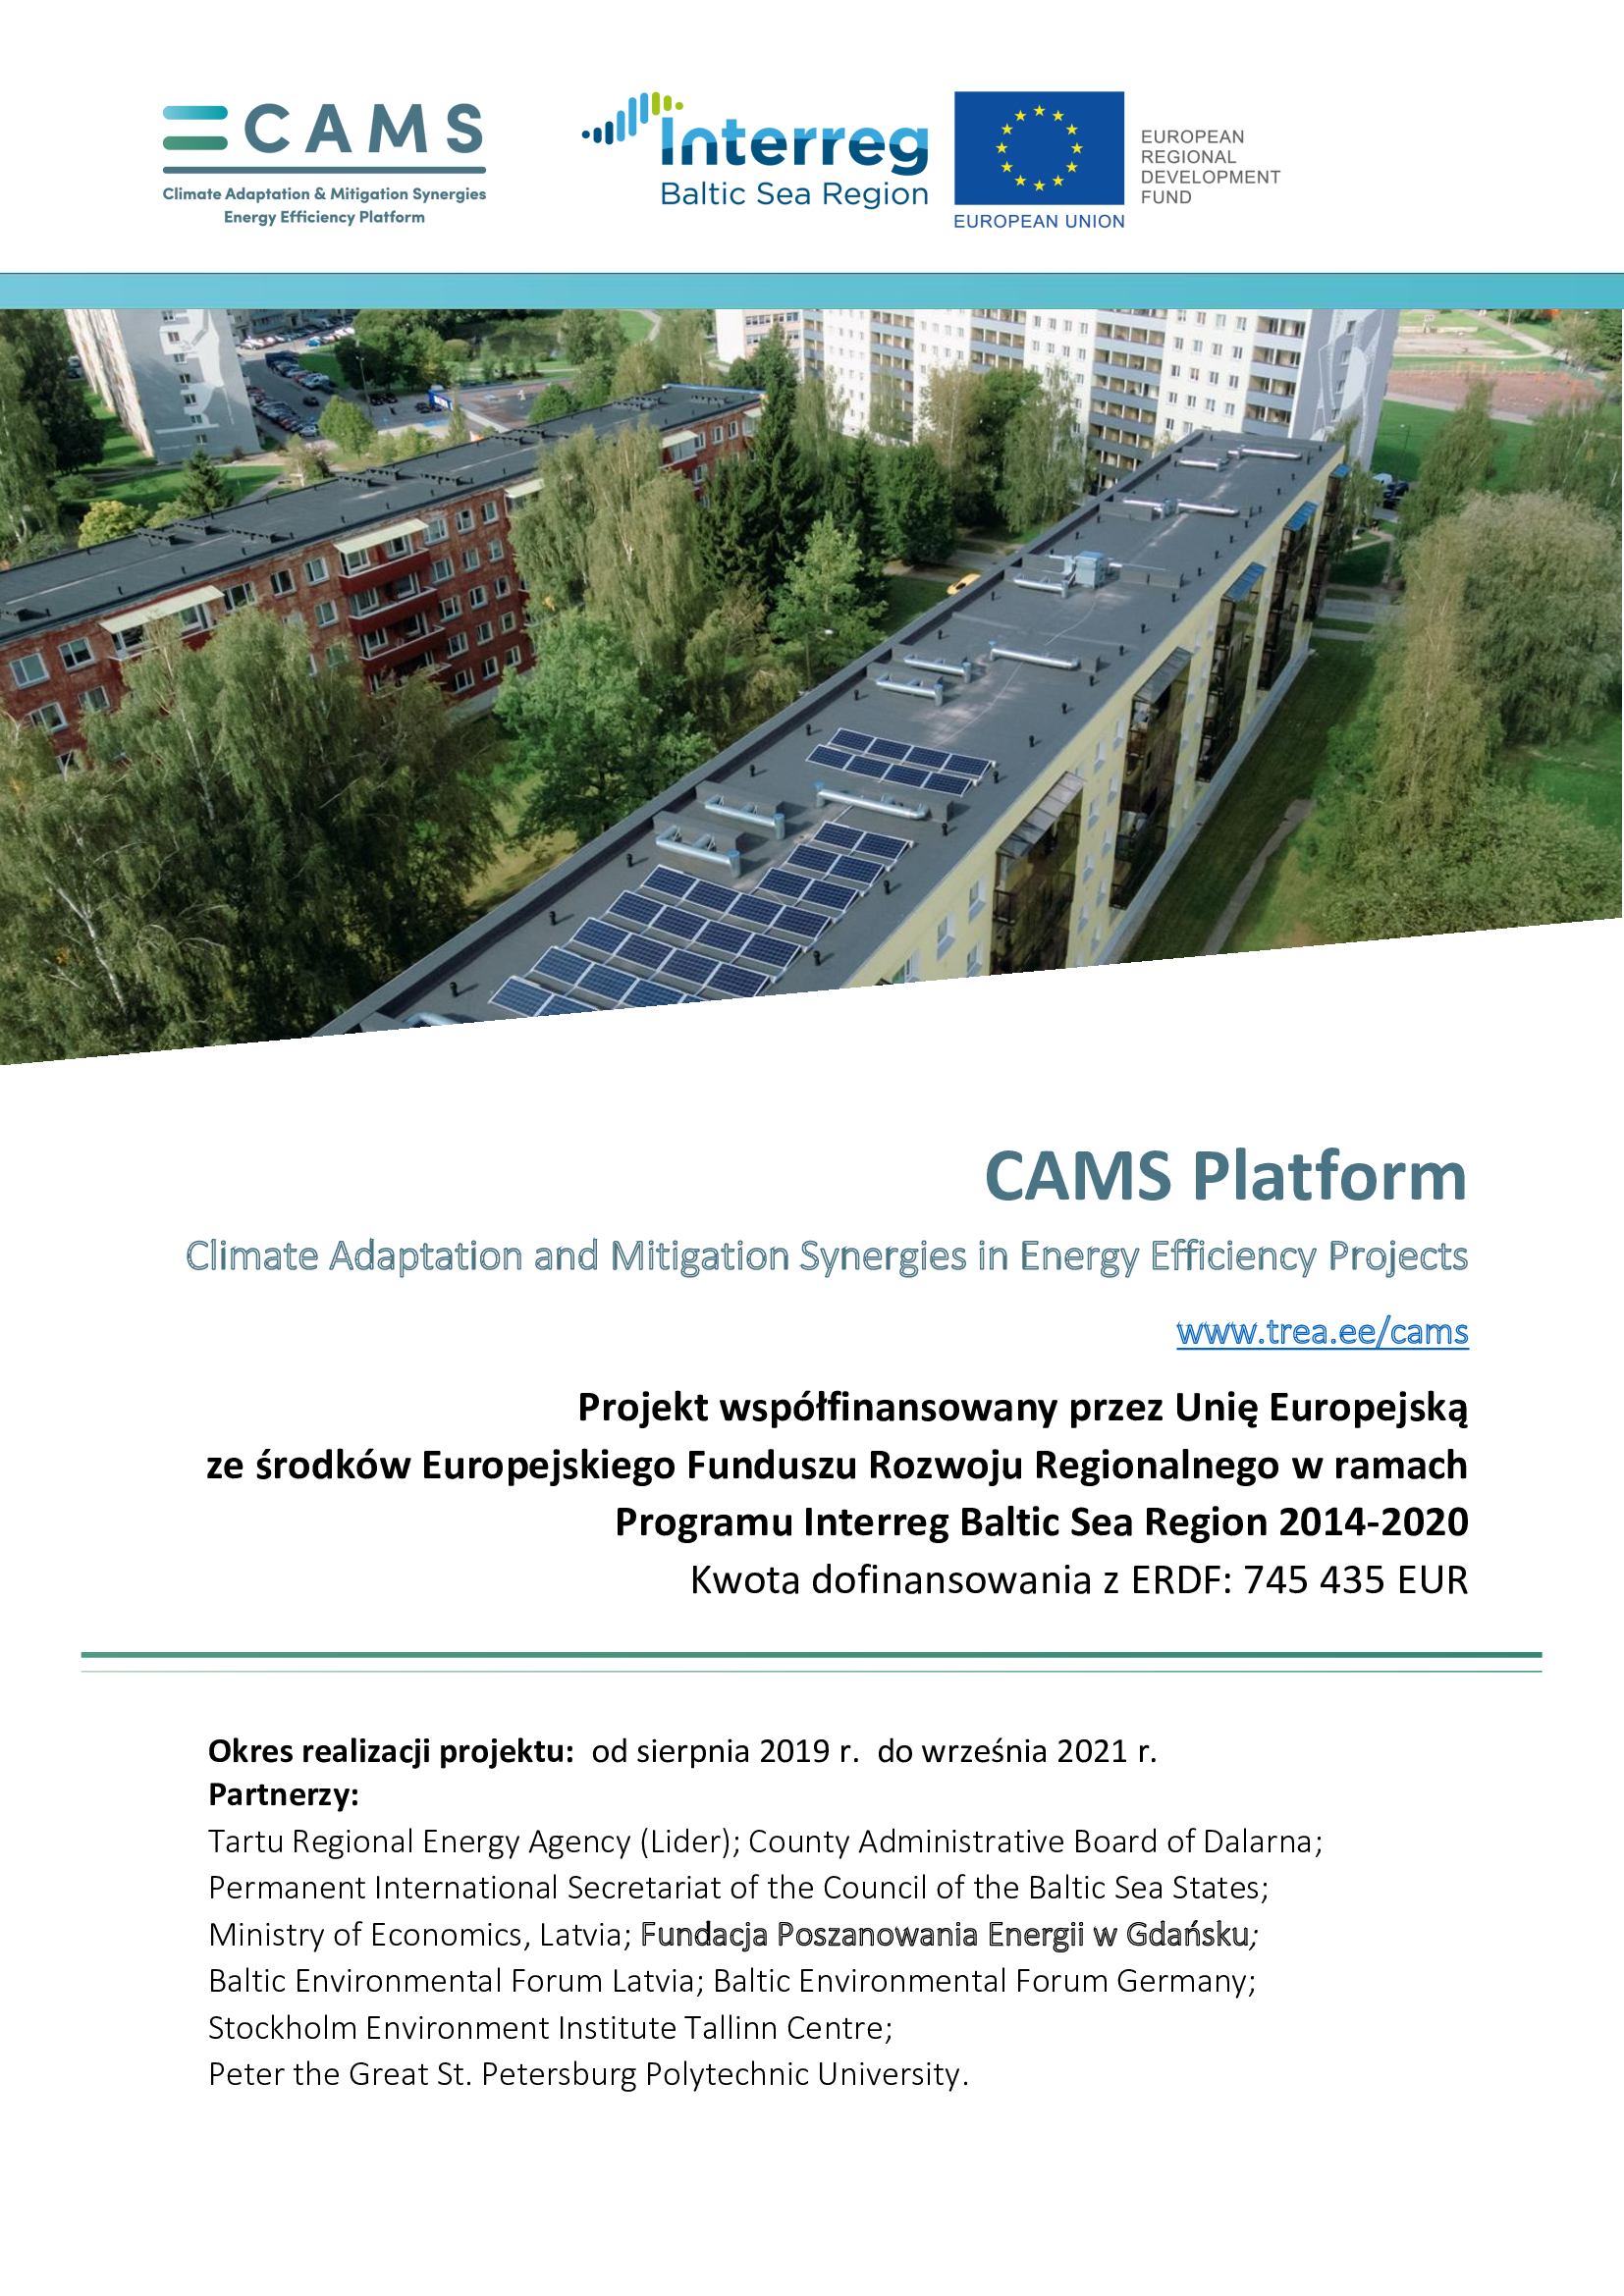 Plakat projektu CAMS Platform i FPE jako jego partnera